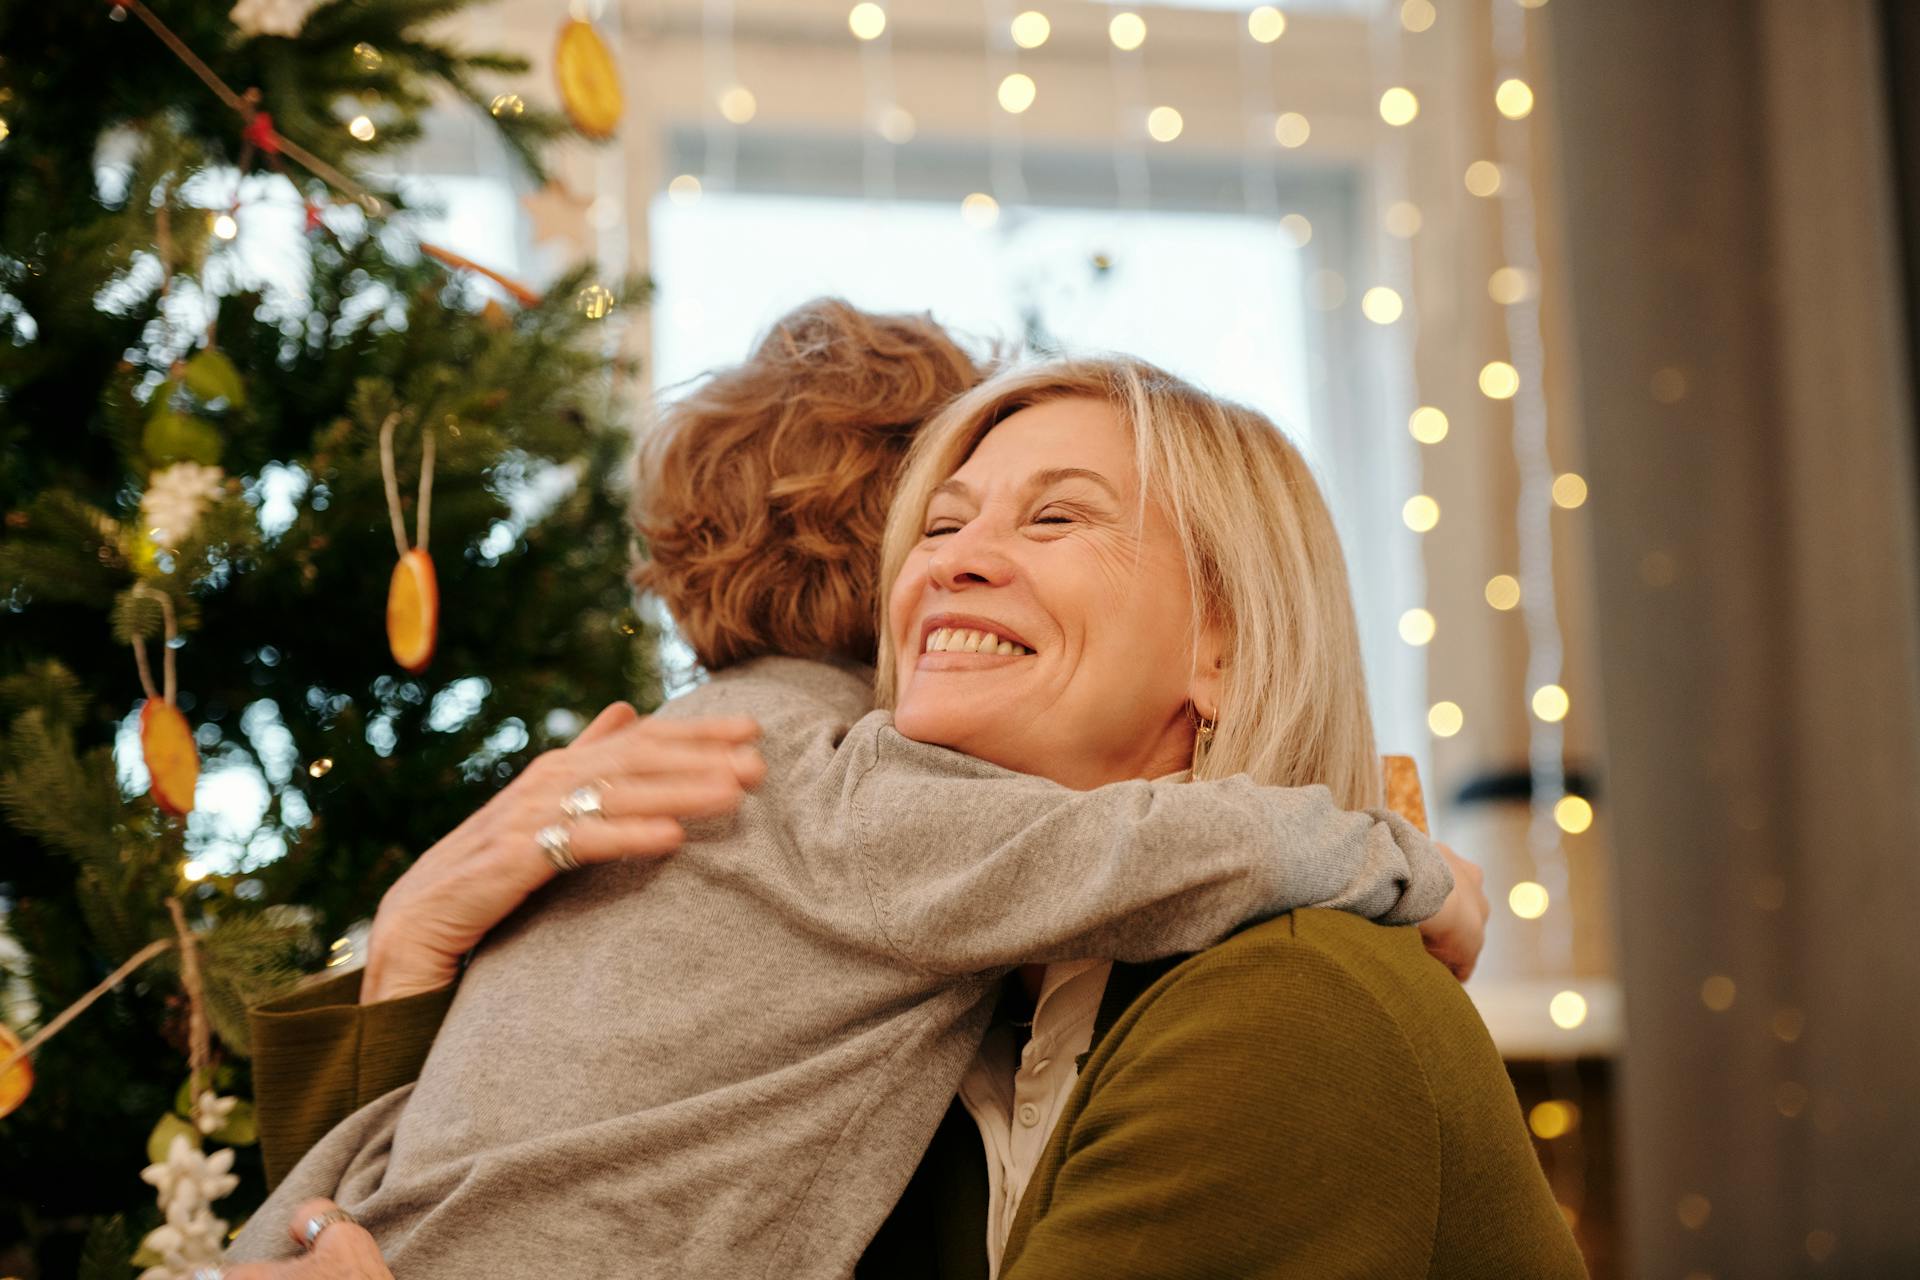 A grandmother hugging her grandson | Source: Pexels